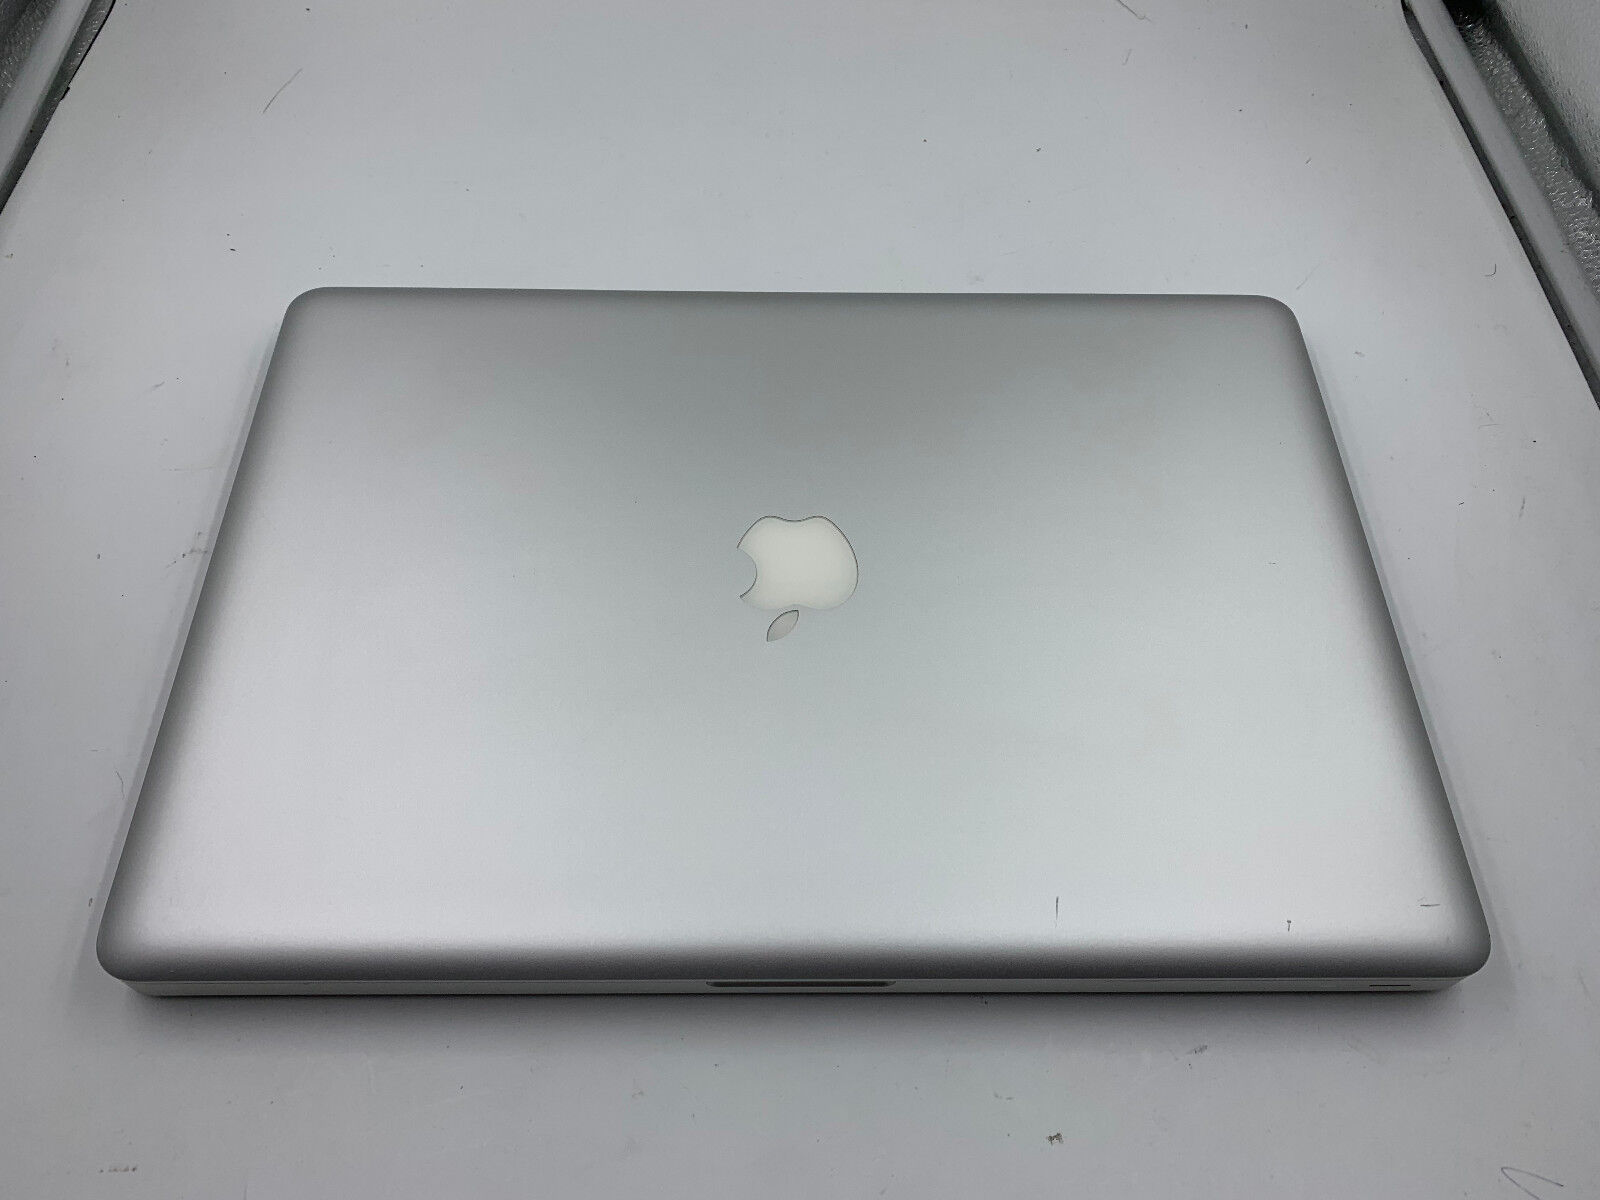 dead pixel macbook pro retina out of warranty apple